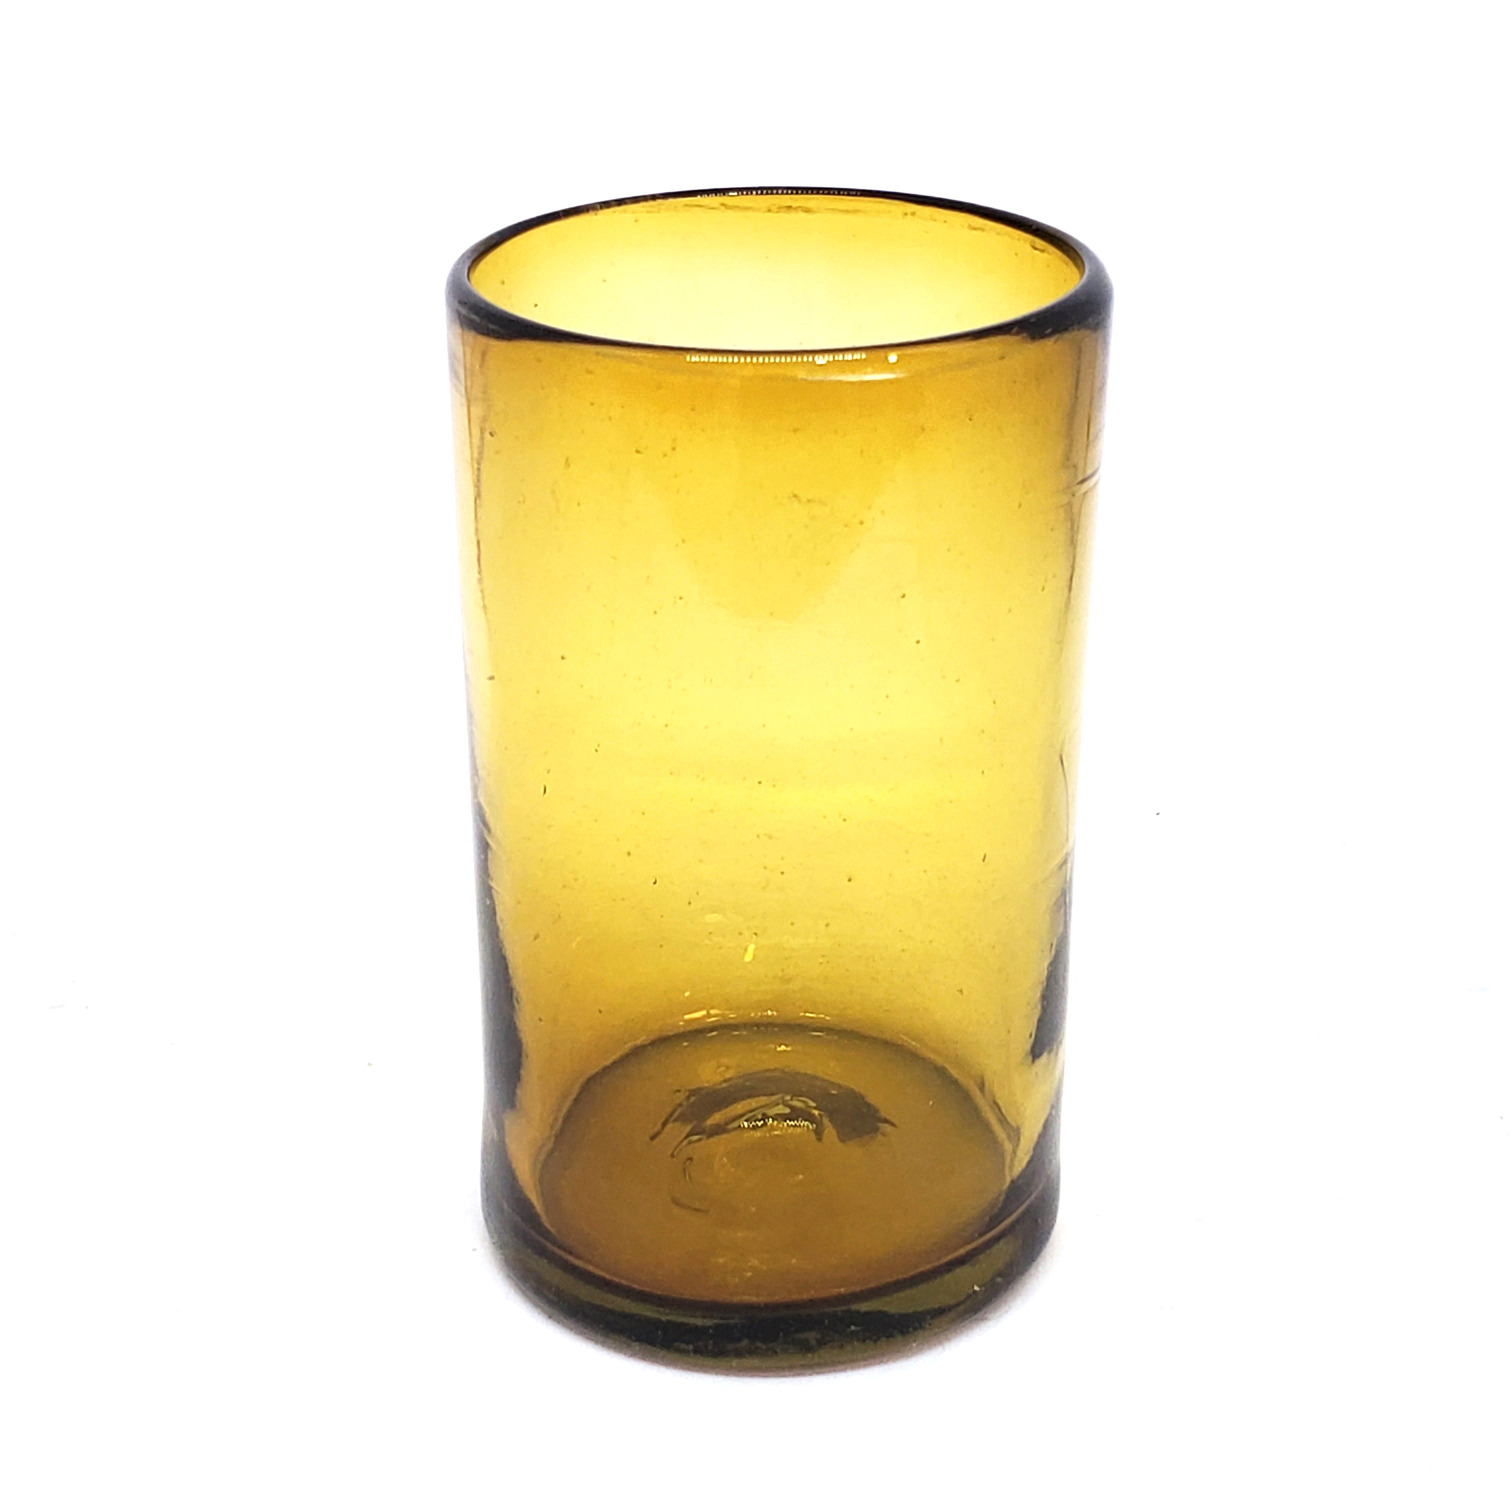 Ofertas / vasos grandes color ambar / �stos artesanales vasos le dar�n un toque cl�sico a su bebida favorita.